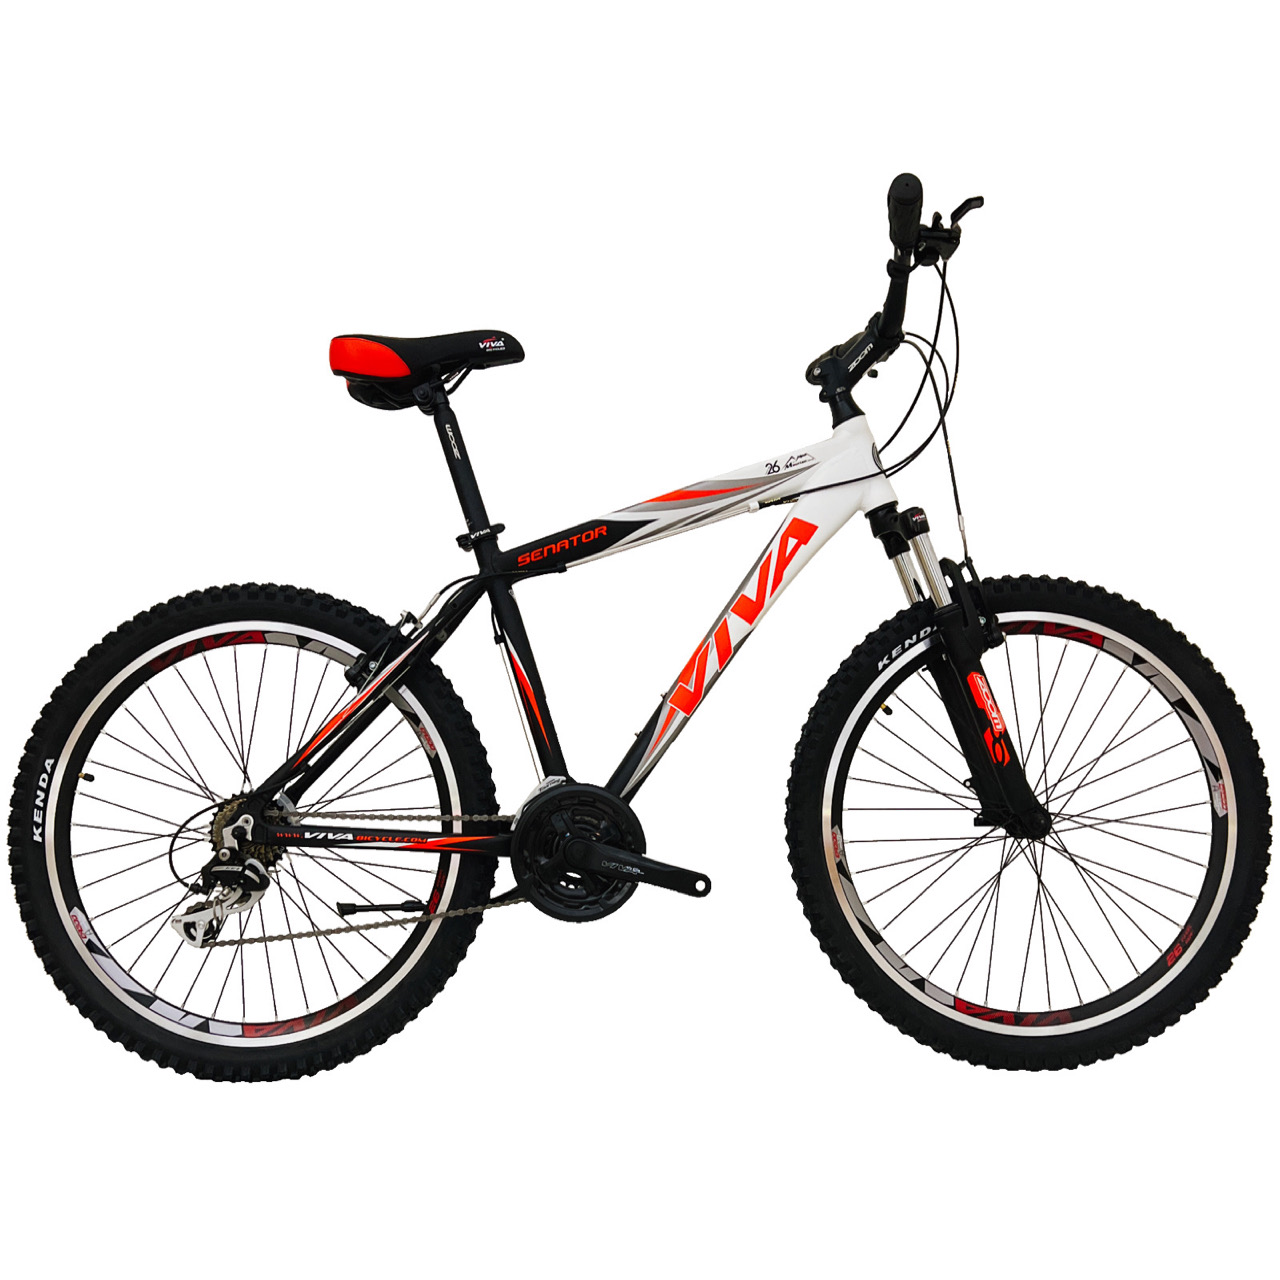 نکته خرید - قیمت روز دوچرخه کوهستان ویوا مدل SENATOR کد 2 سایز 26 خرید